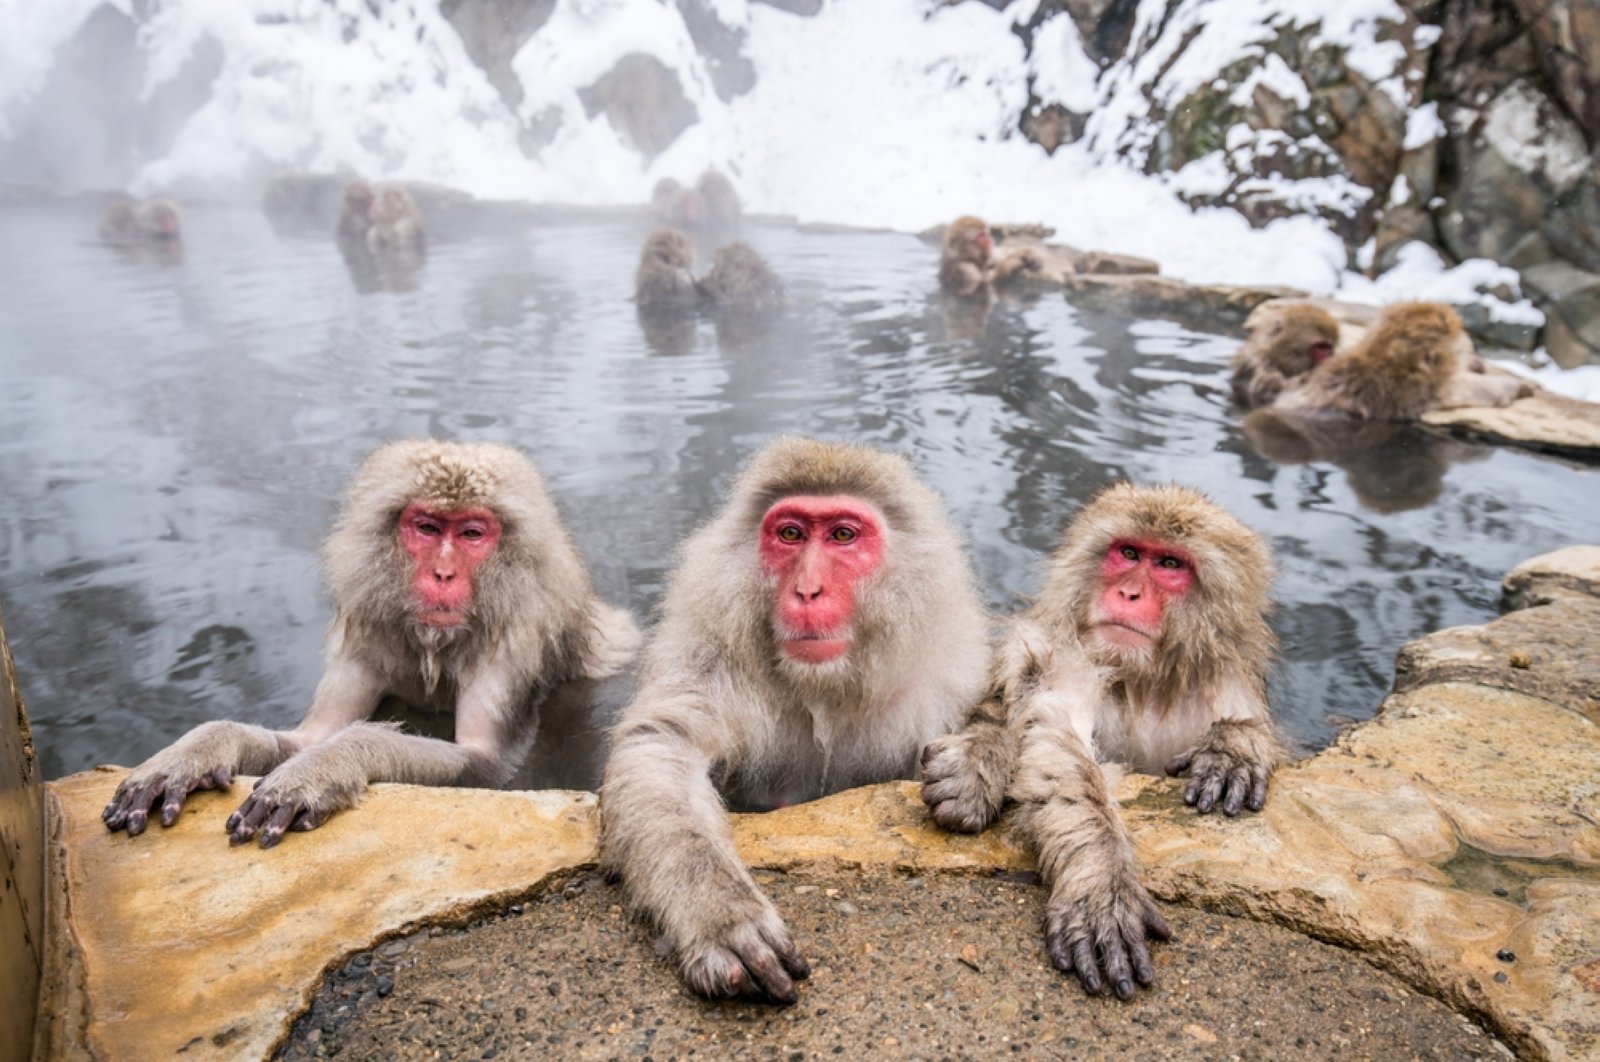 Pihak berwenang Jepang membidik monyet perampok yang melukai 42